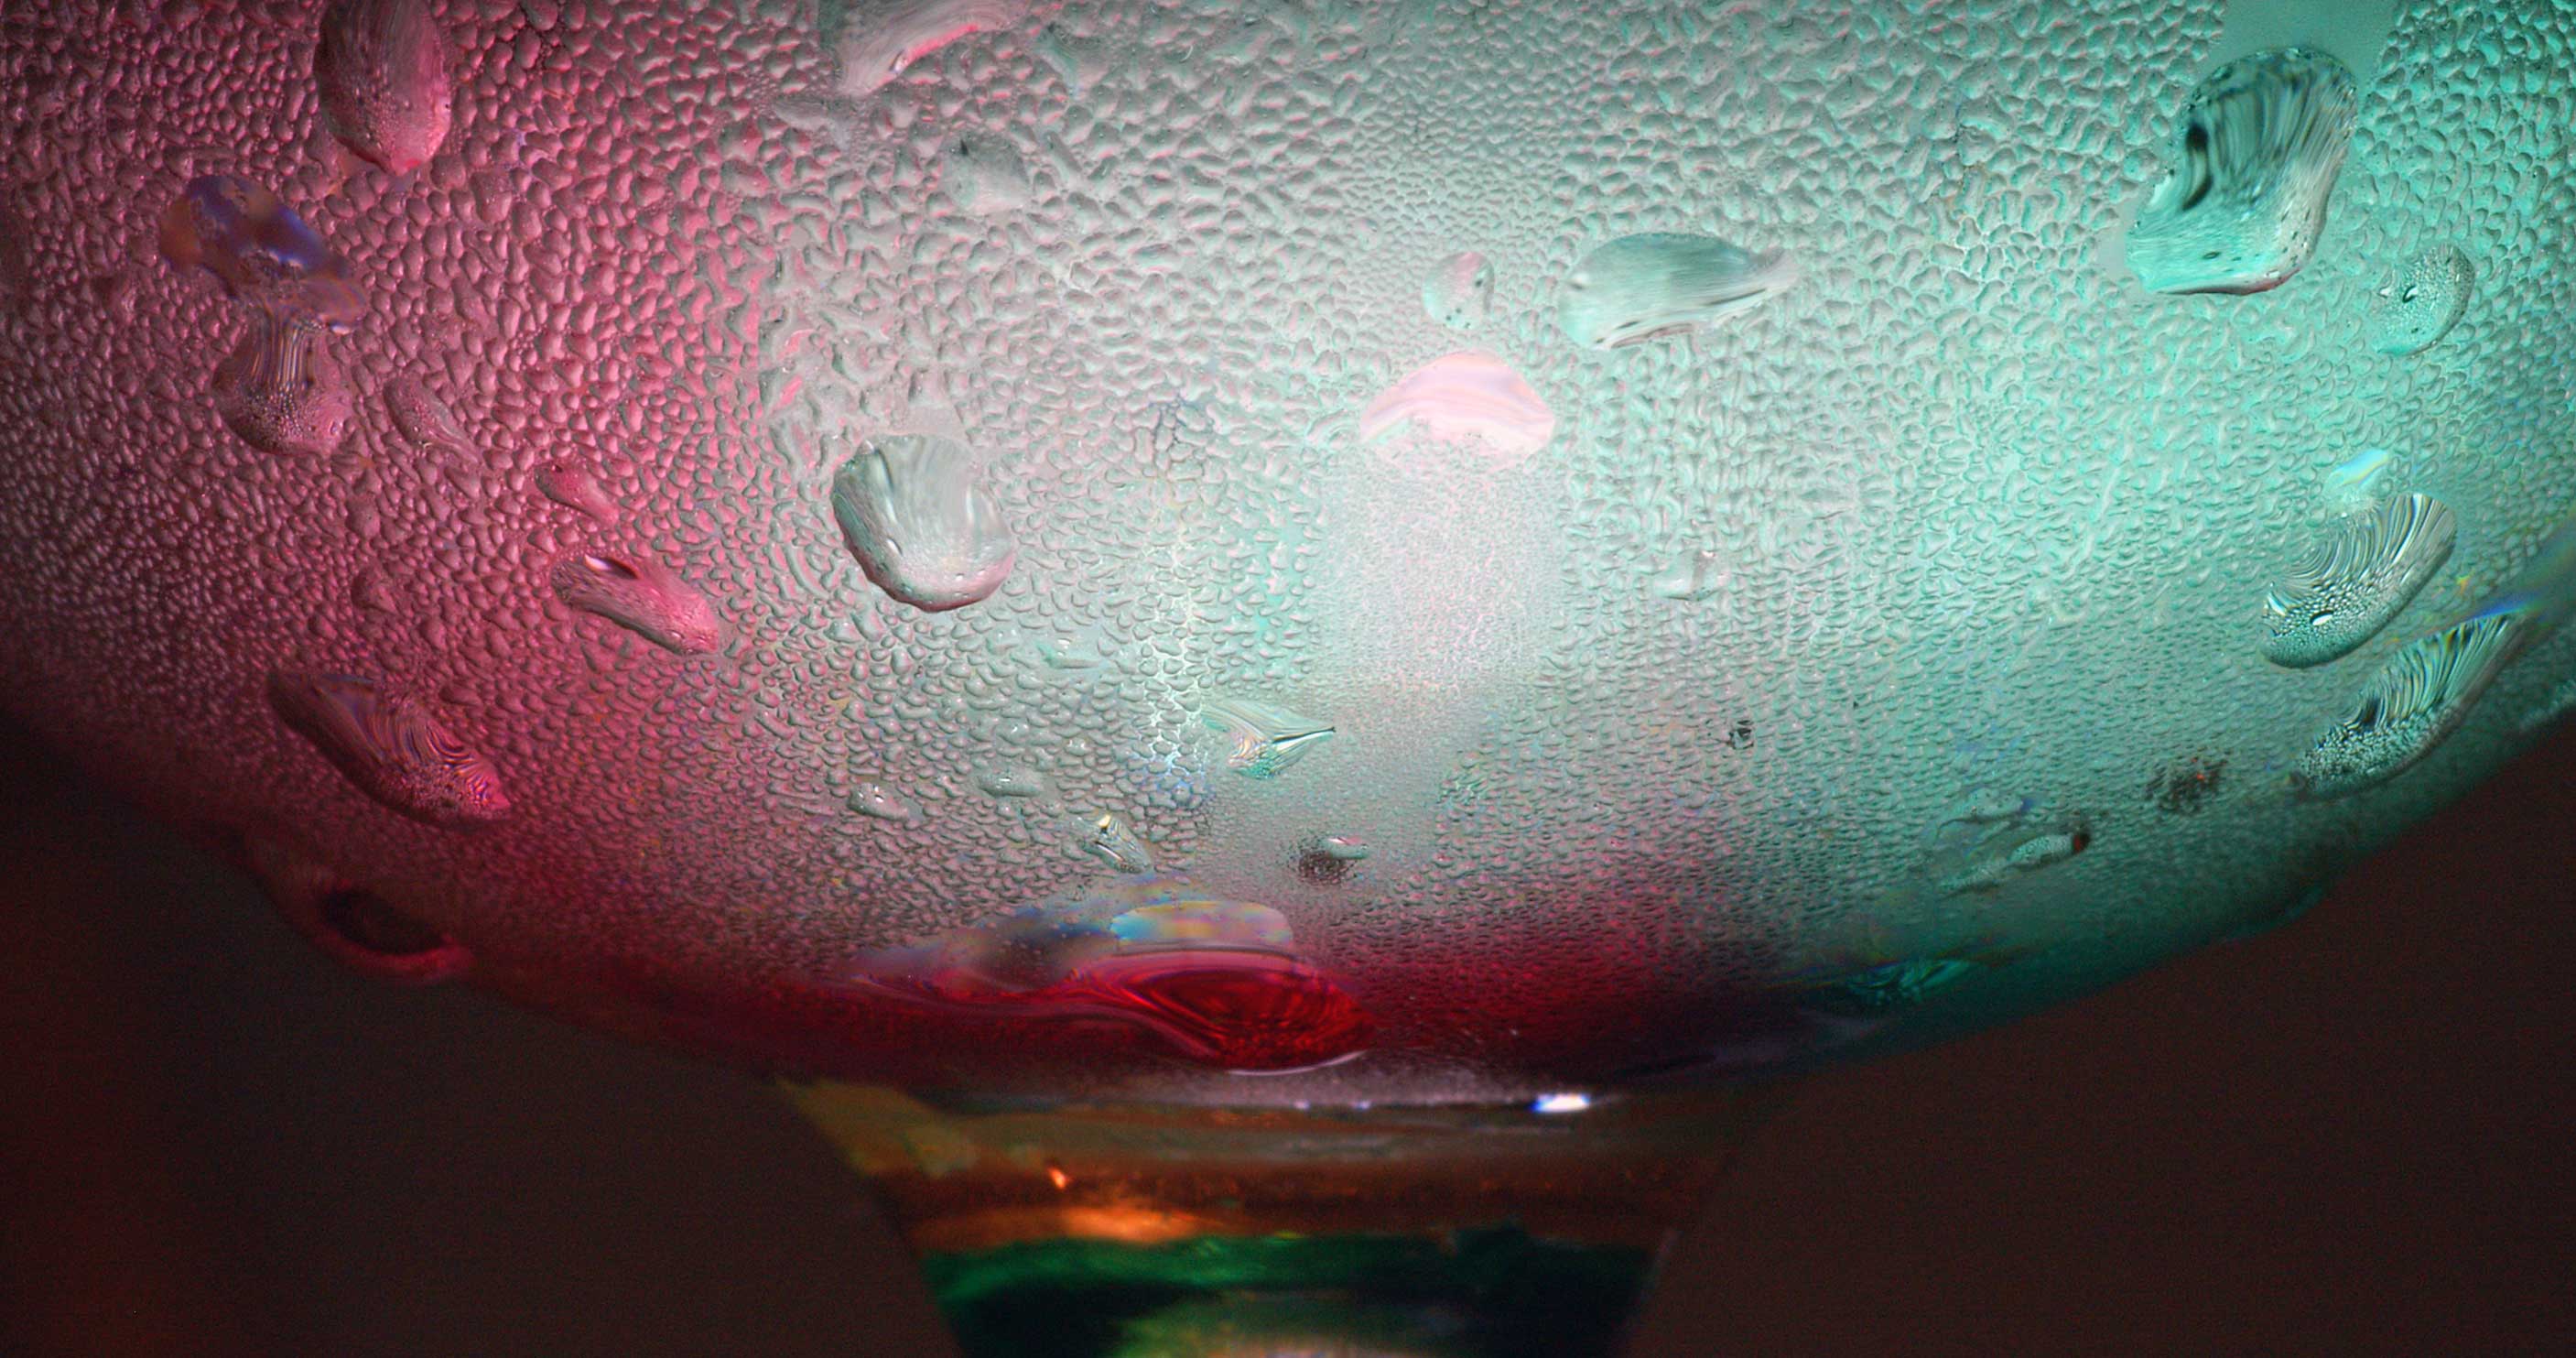 Water in glass 2.jpg